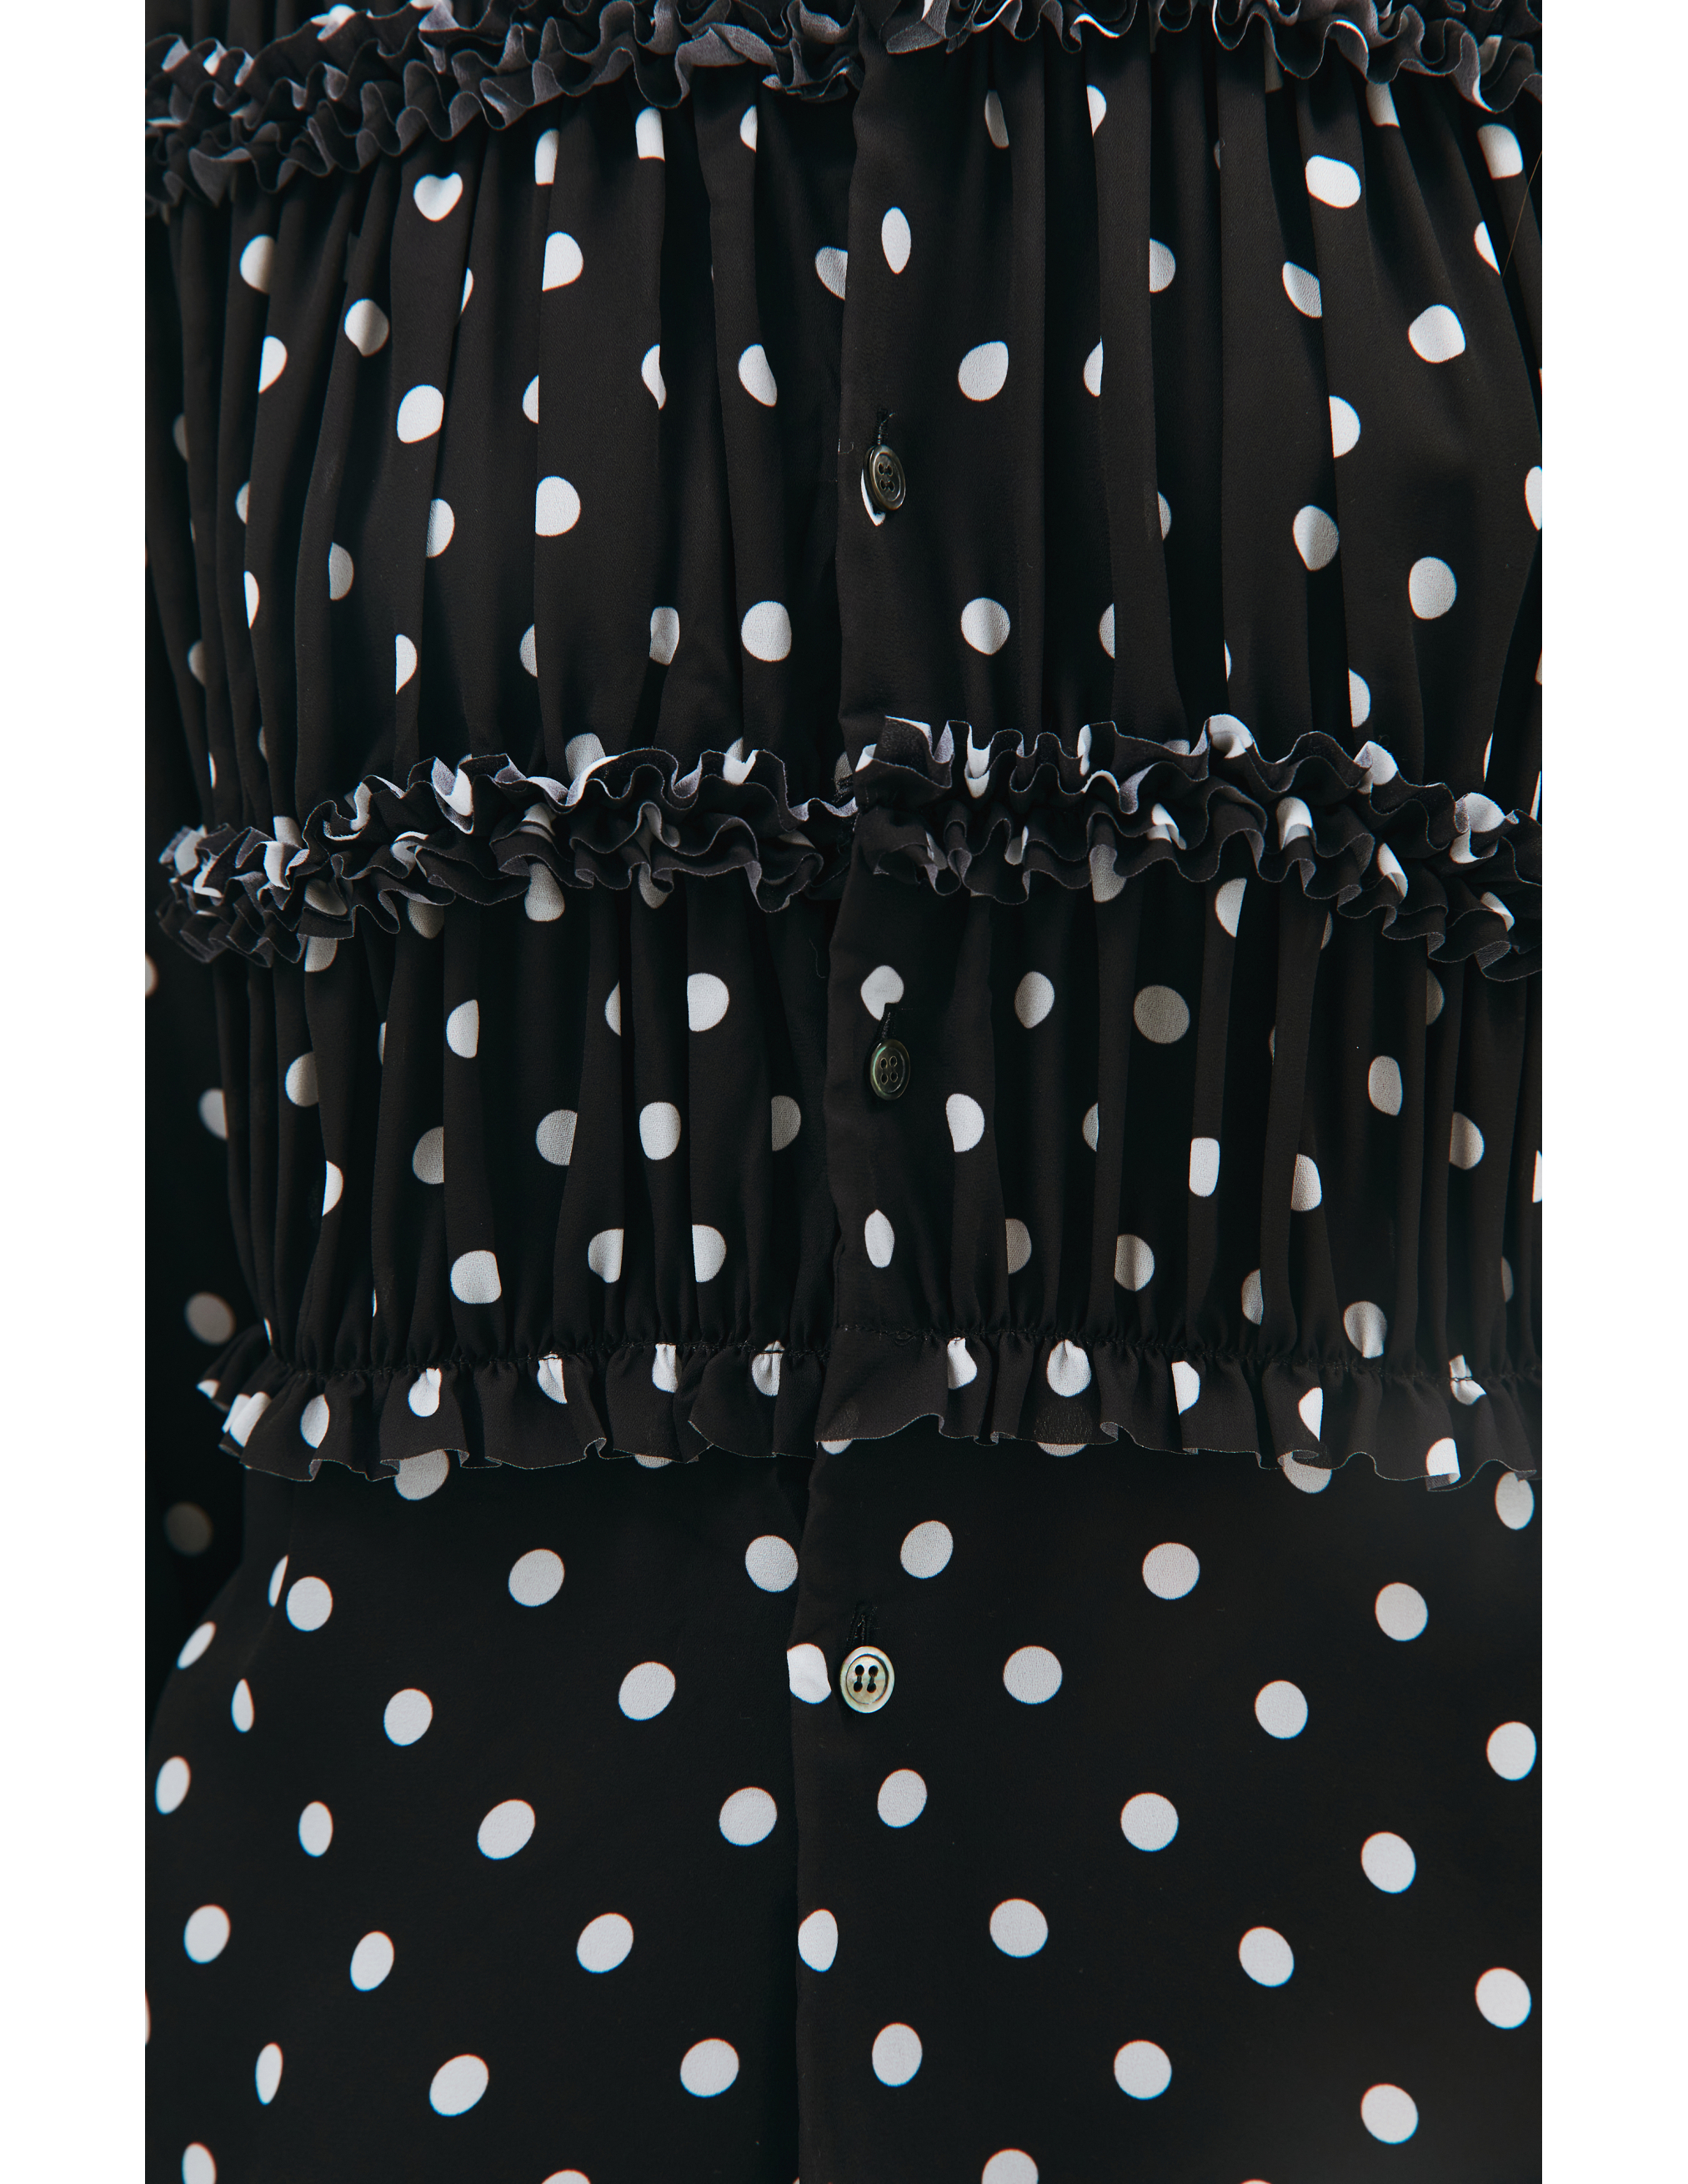 Блузка в горох с рюшами - Comme des Garcons CdG RH-B002-051-1 Фото 4